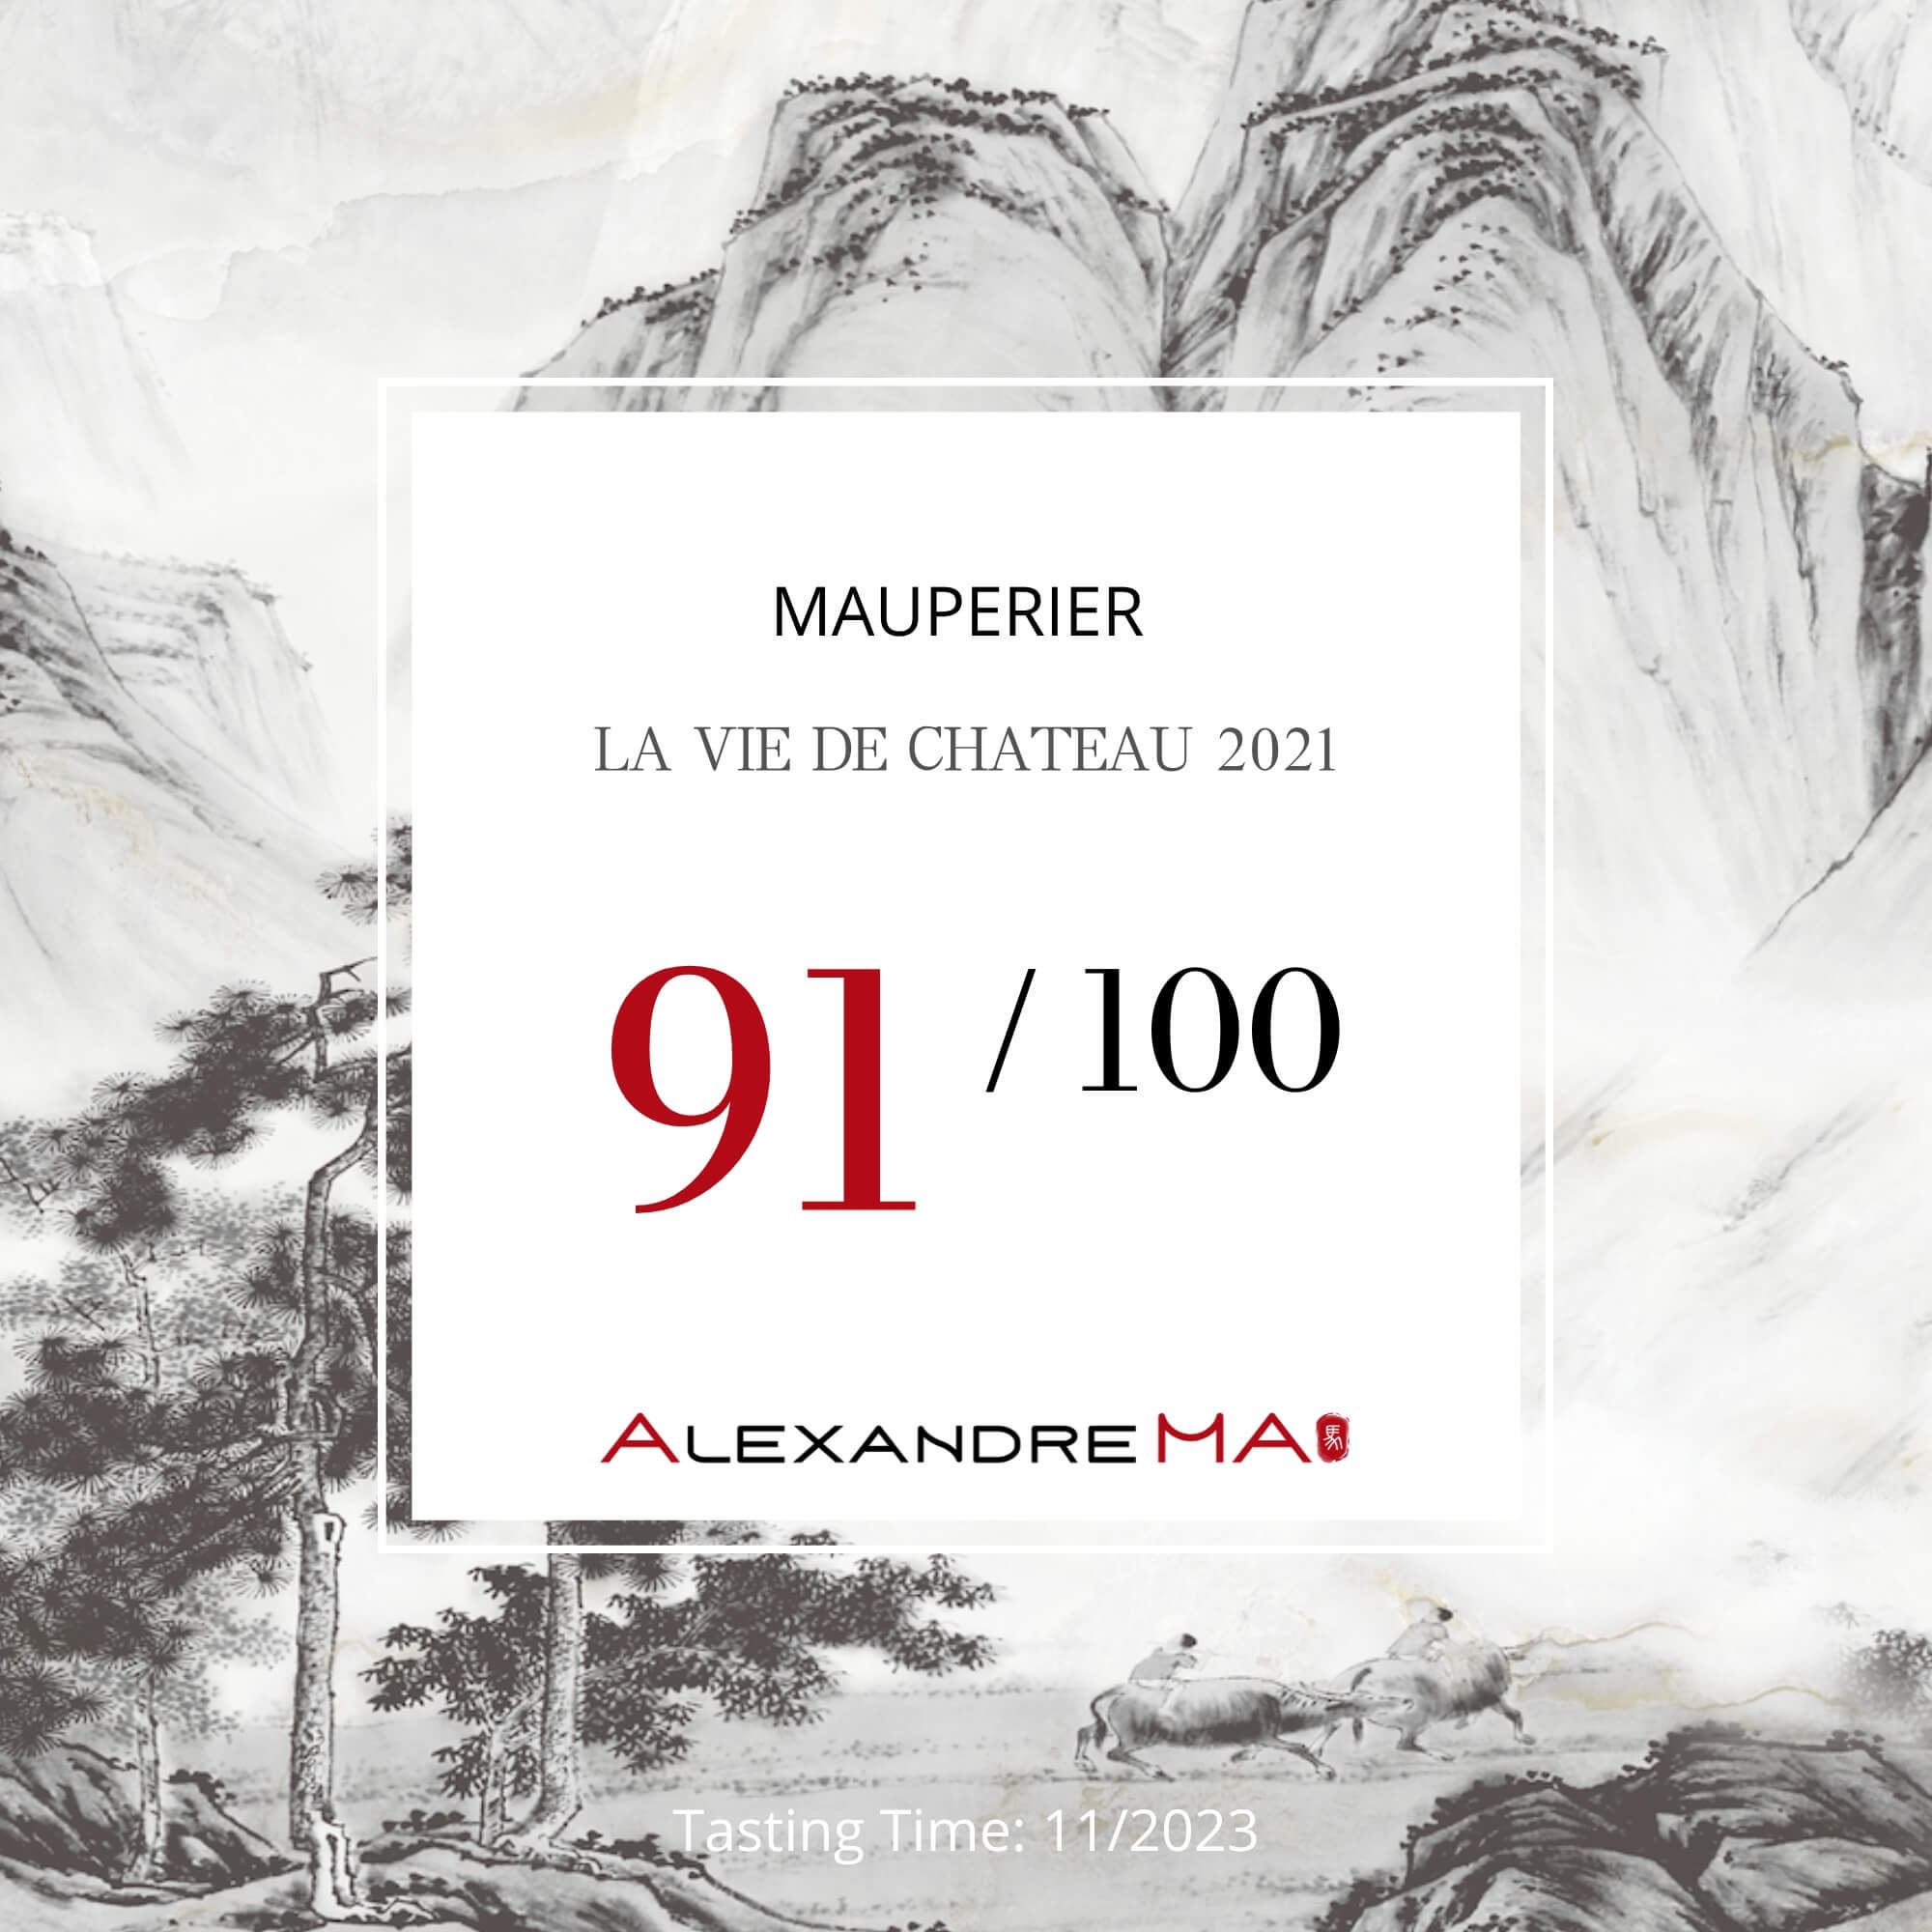 Mauperier-LA VIE DE CHATEAU 2021 - Alexandre Ma